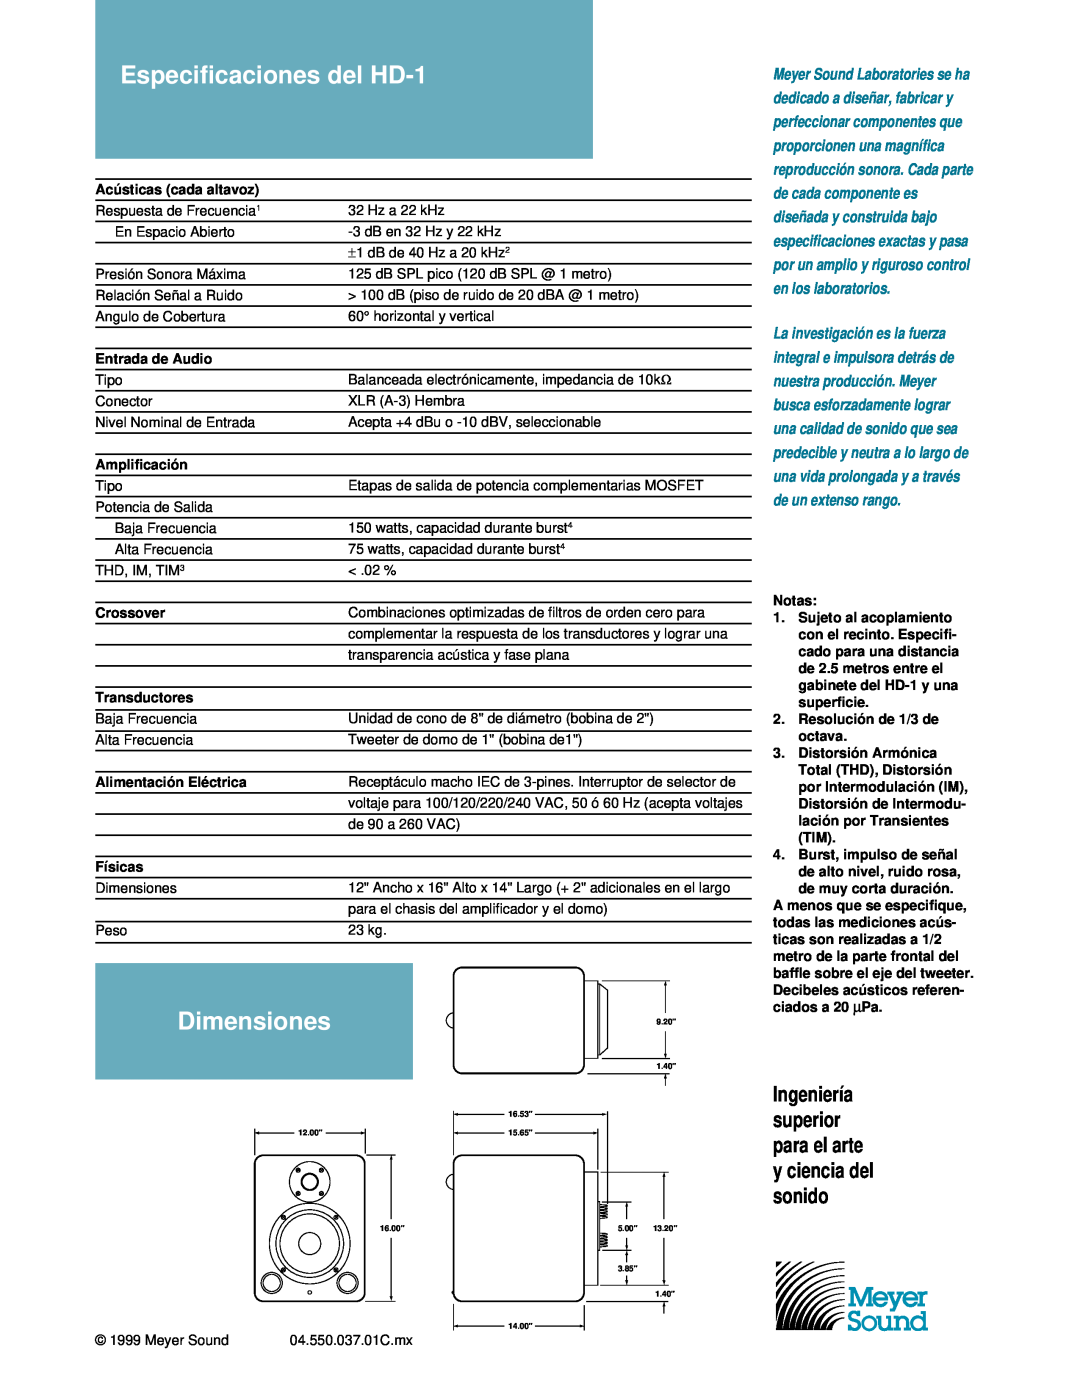 Meyer Sound manual Especificaciones del HD-1, Dimensiones, Ingeniería superior para el arte y ciencia del sonido 